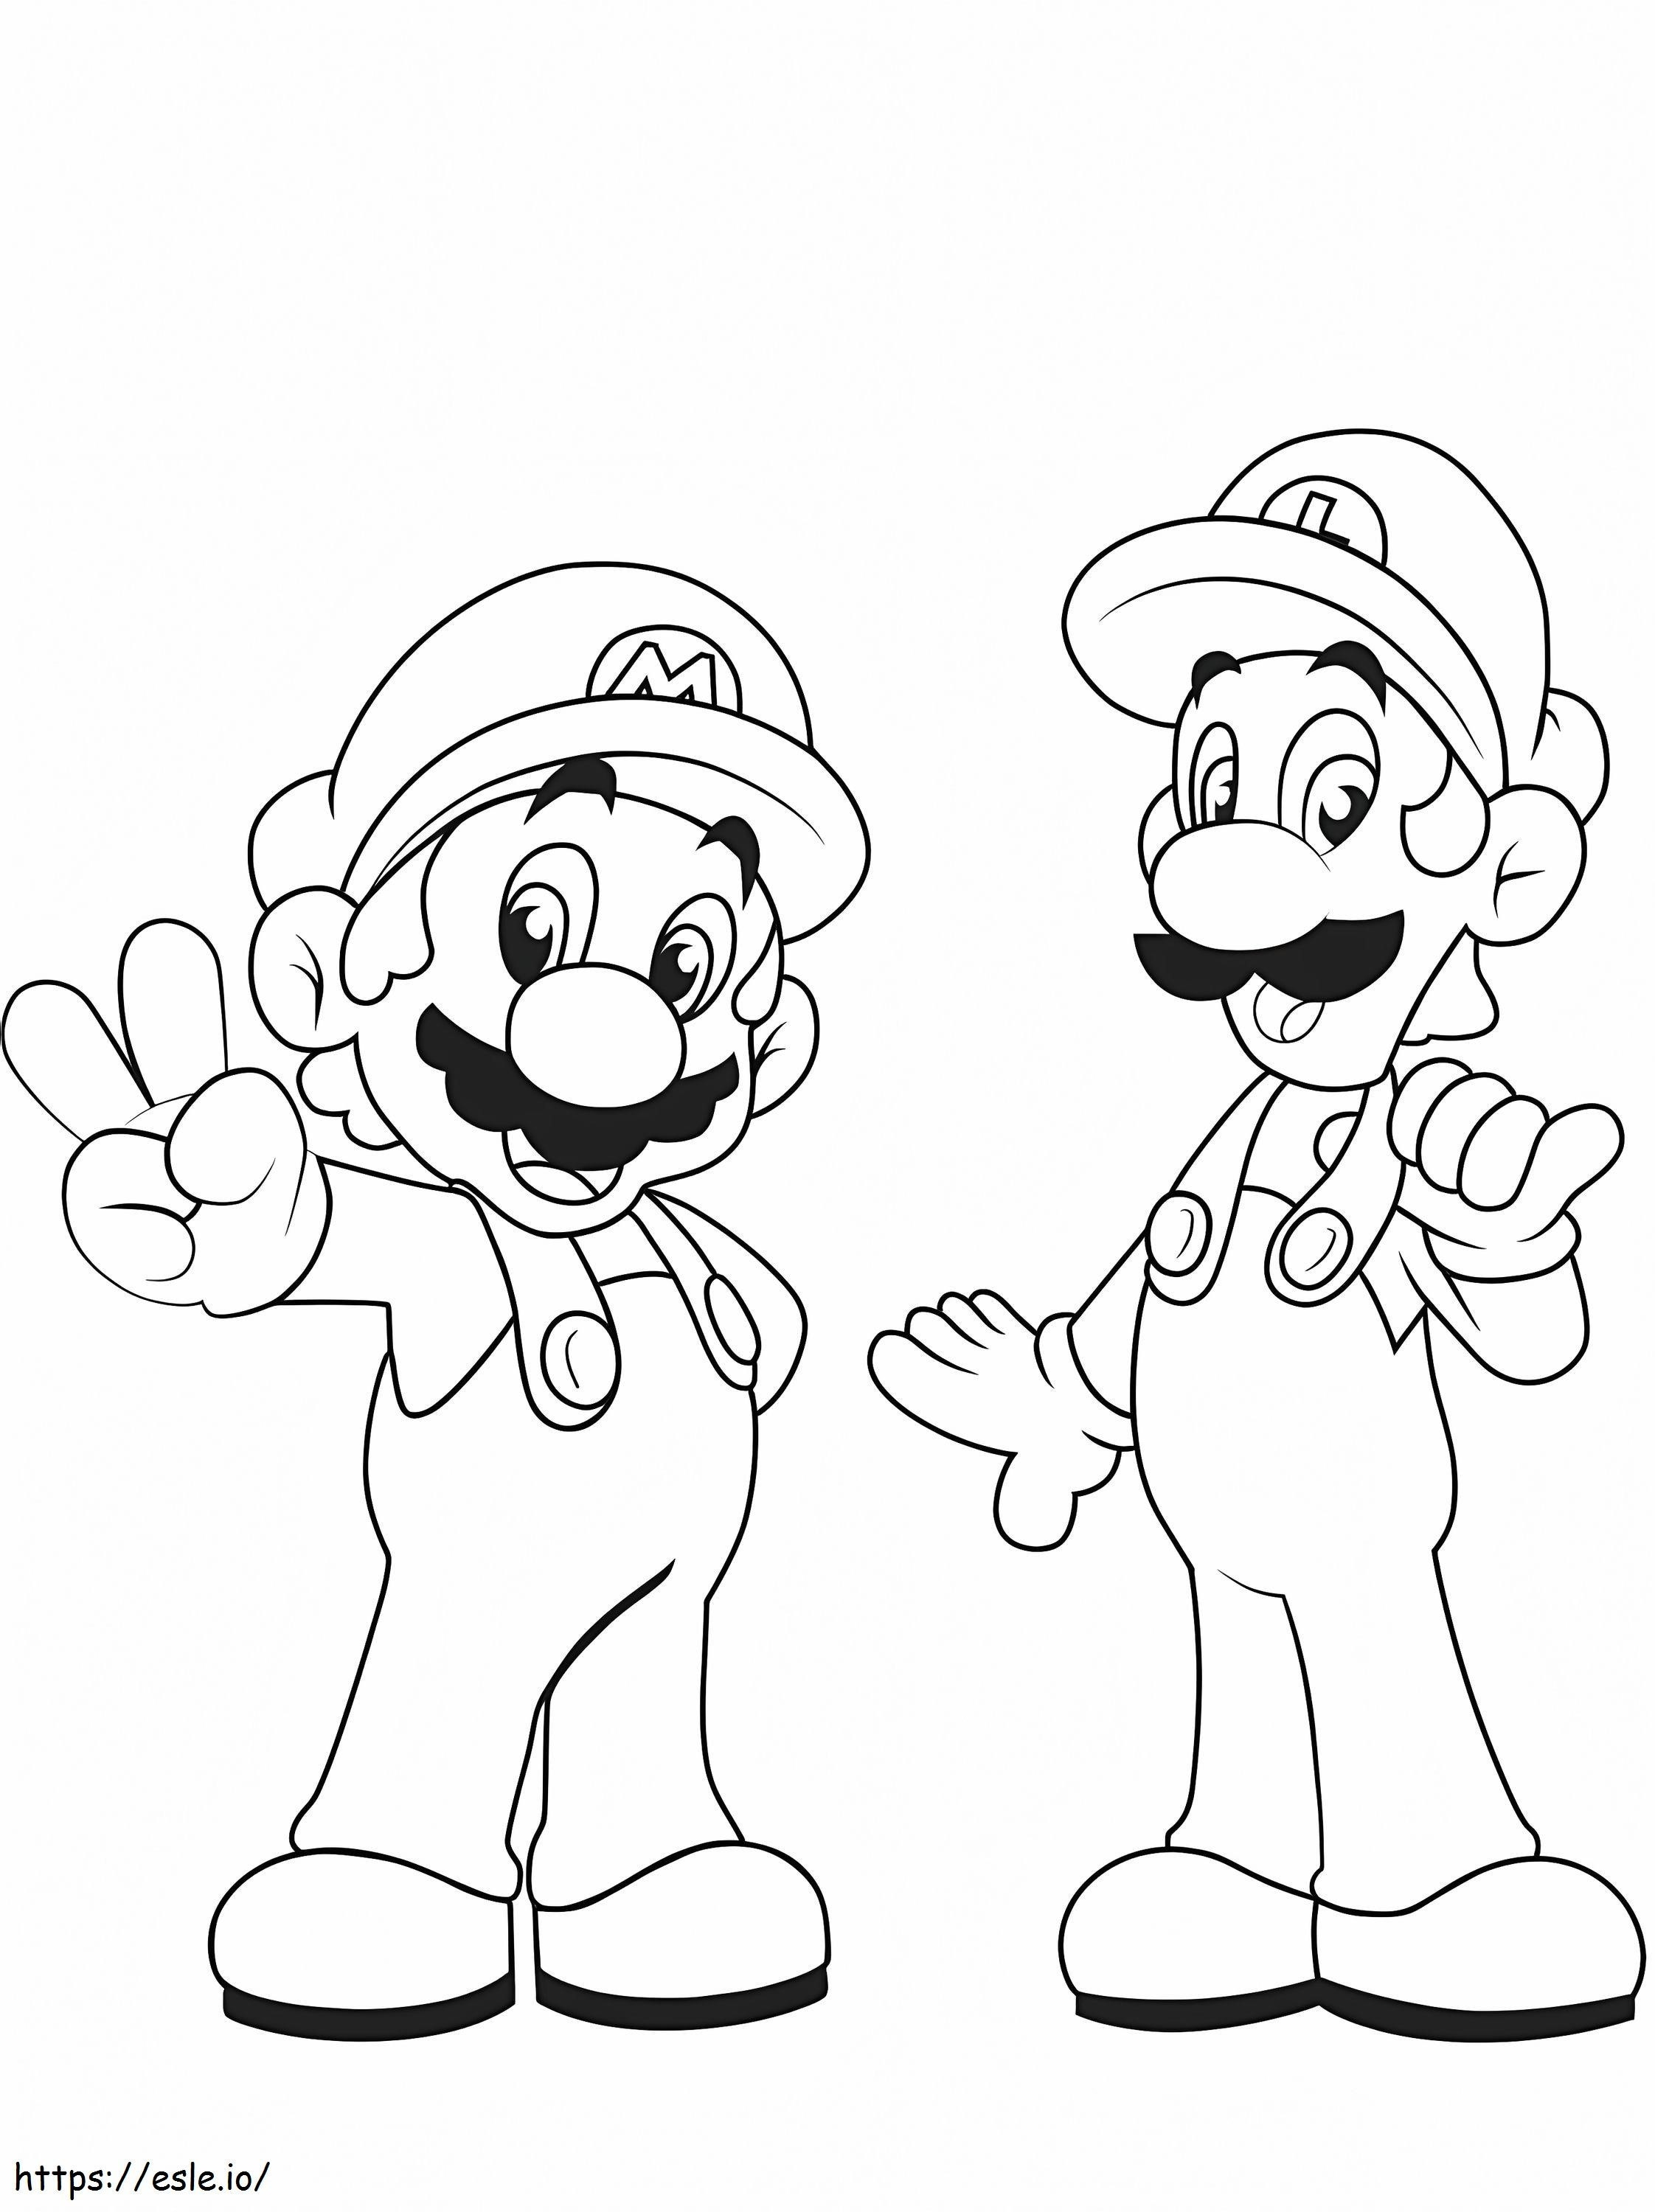 Luigi z Mario kolorowanka